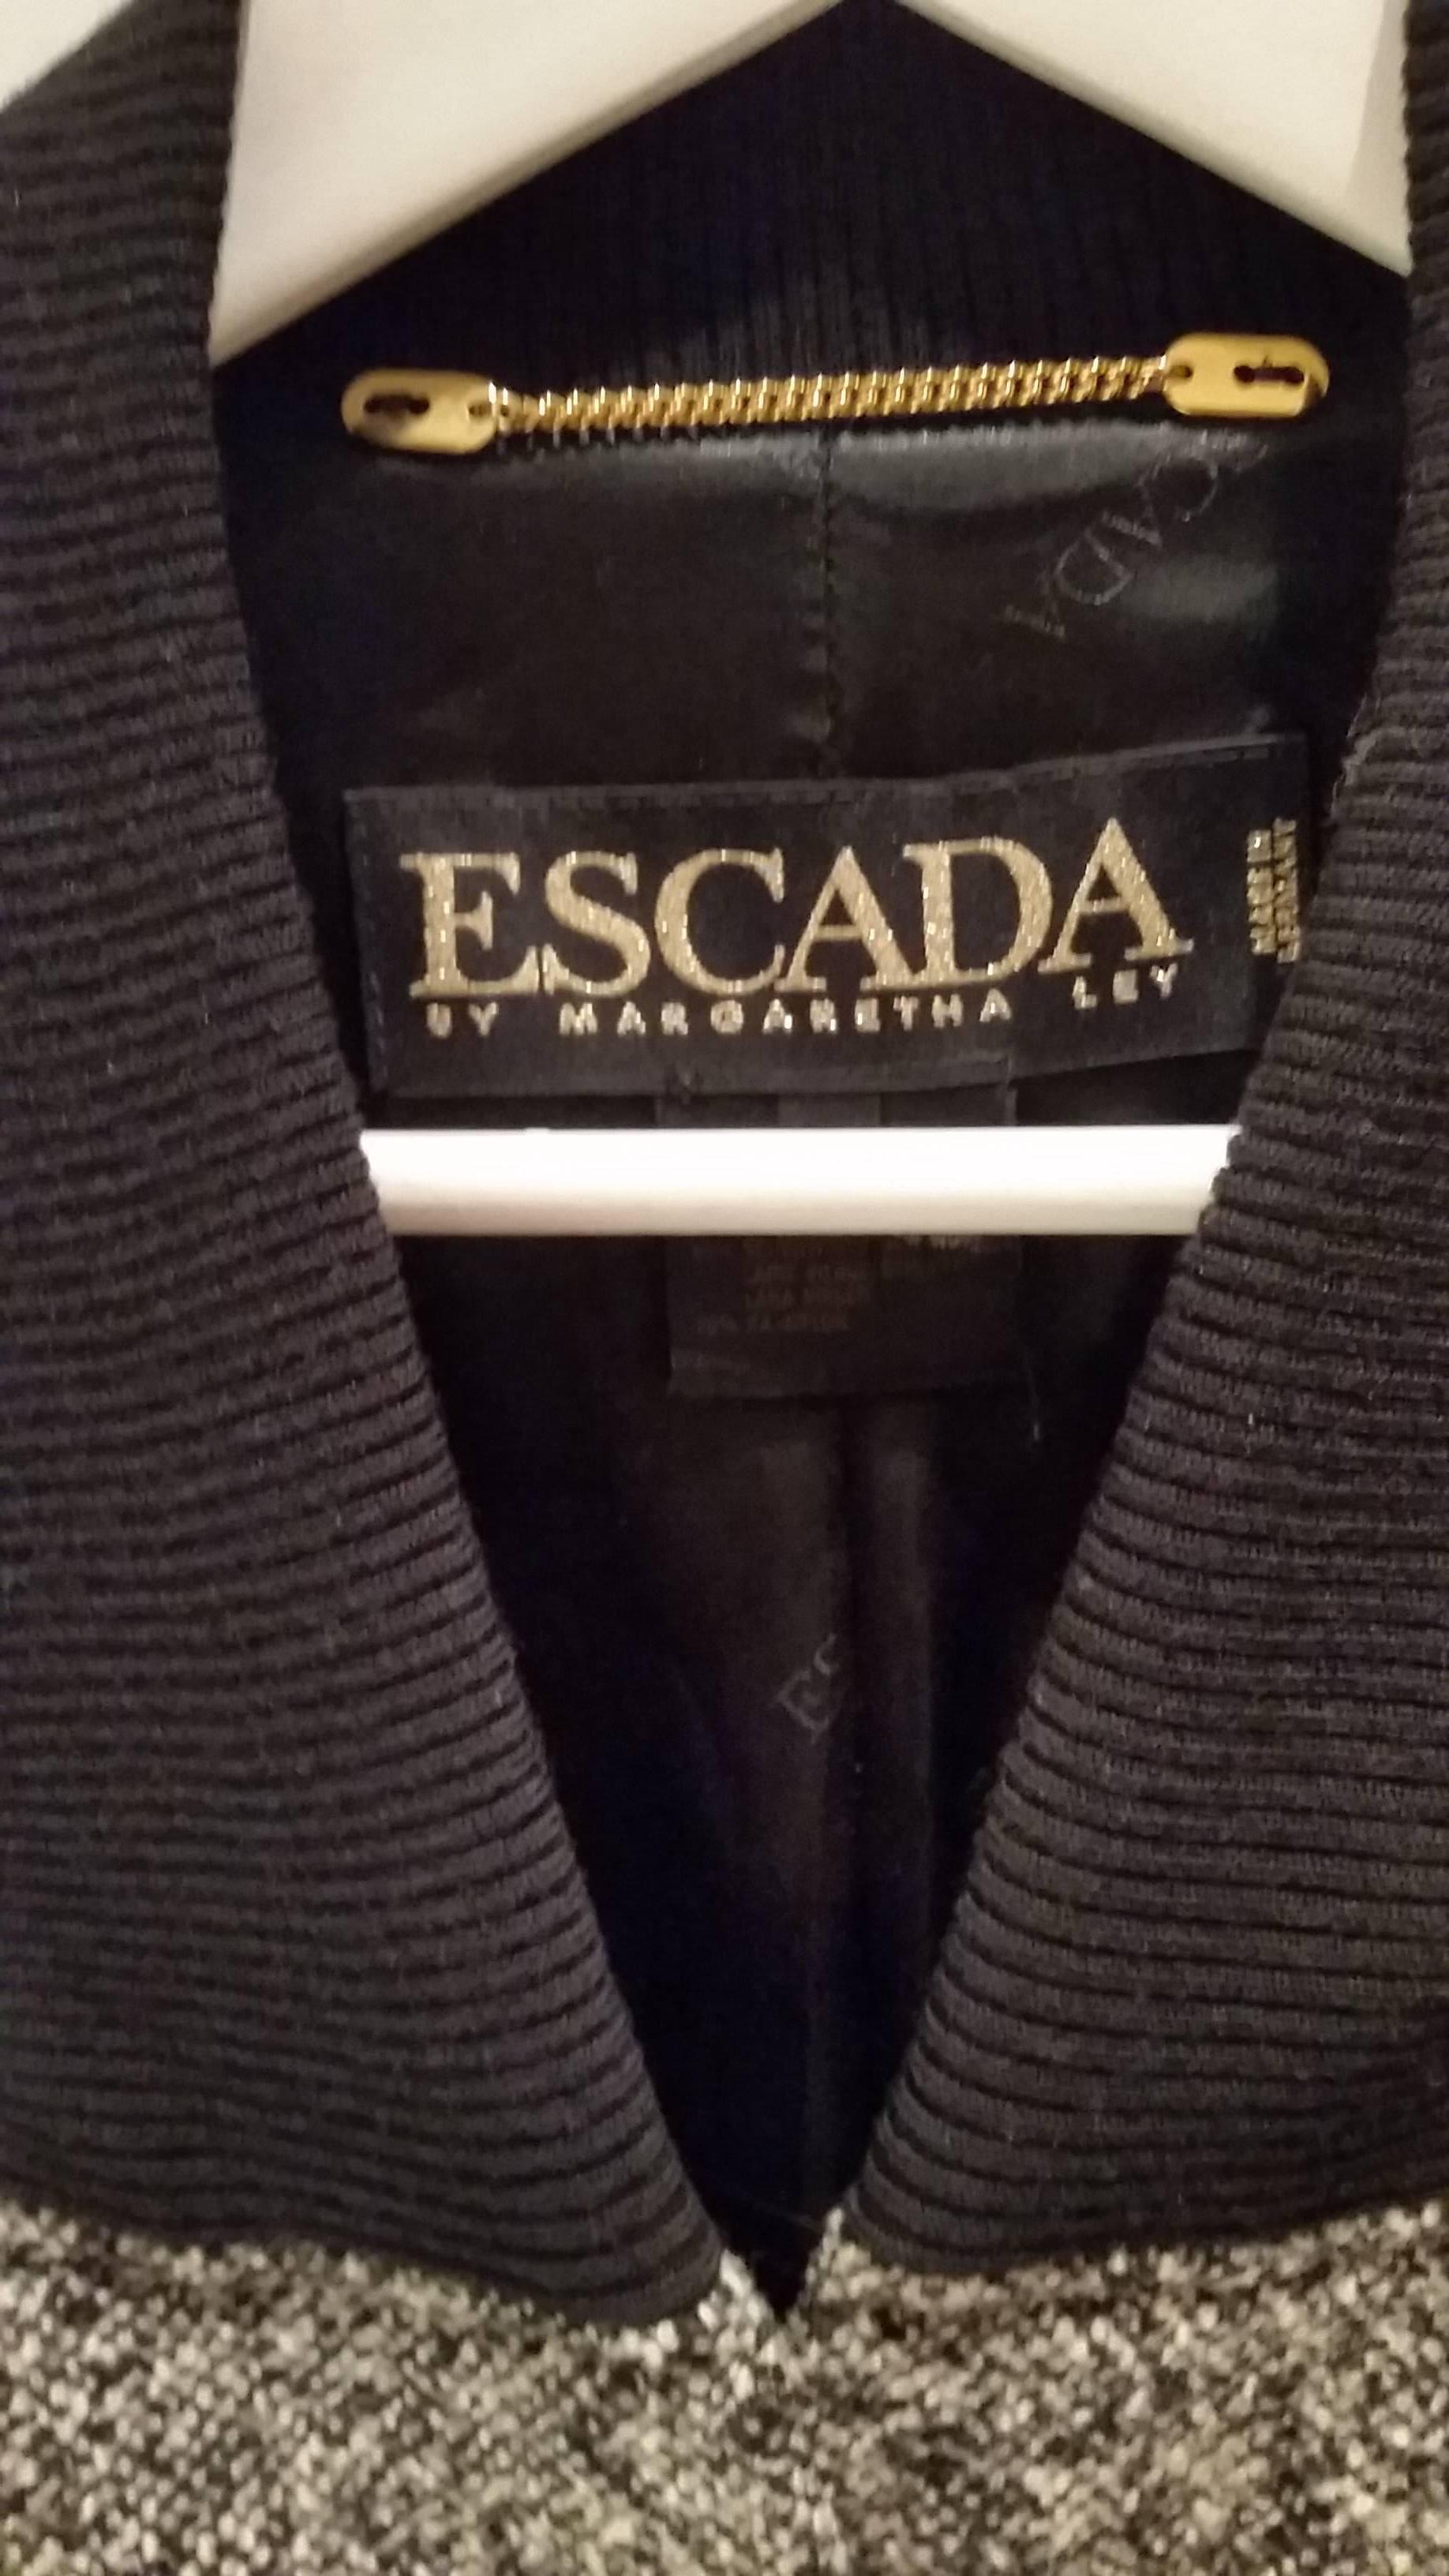 1980er Escada by Margaretha Ley graue und schwarze Jacke made in germany
in 38 europäischen Größen
zusammensetzung 80 % Wolle 20% Nylon